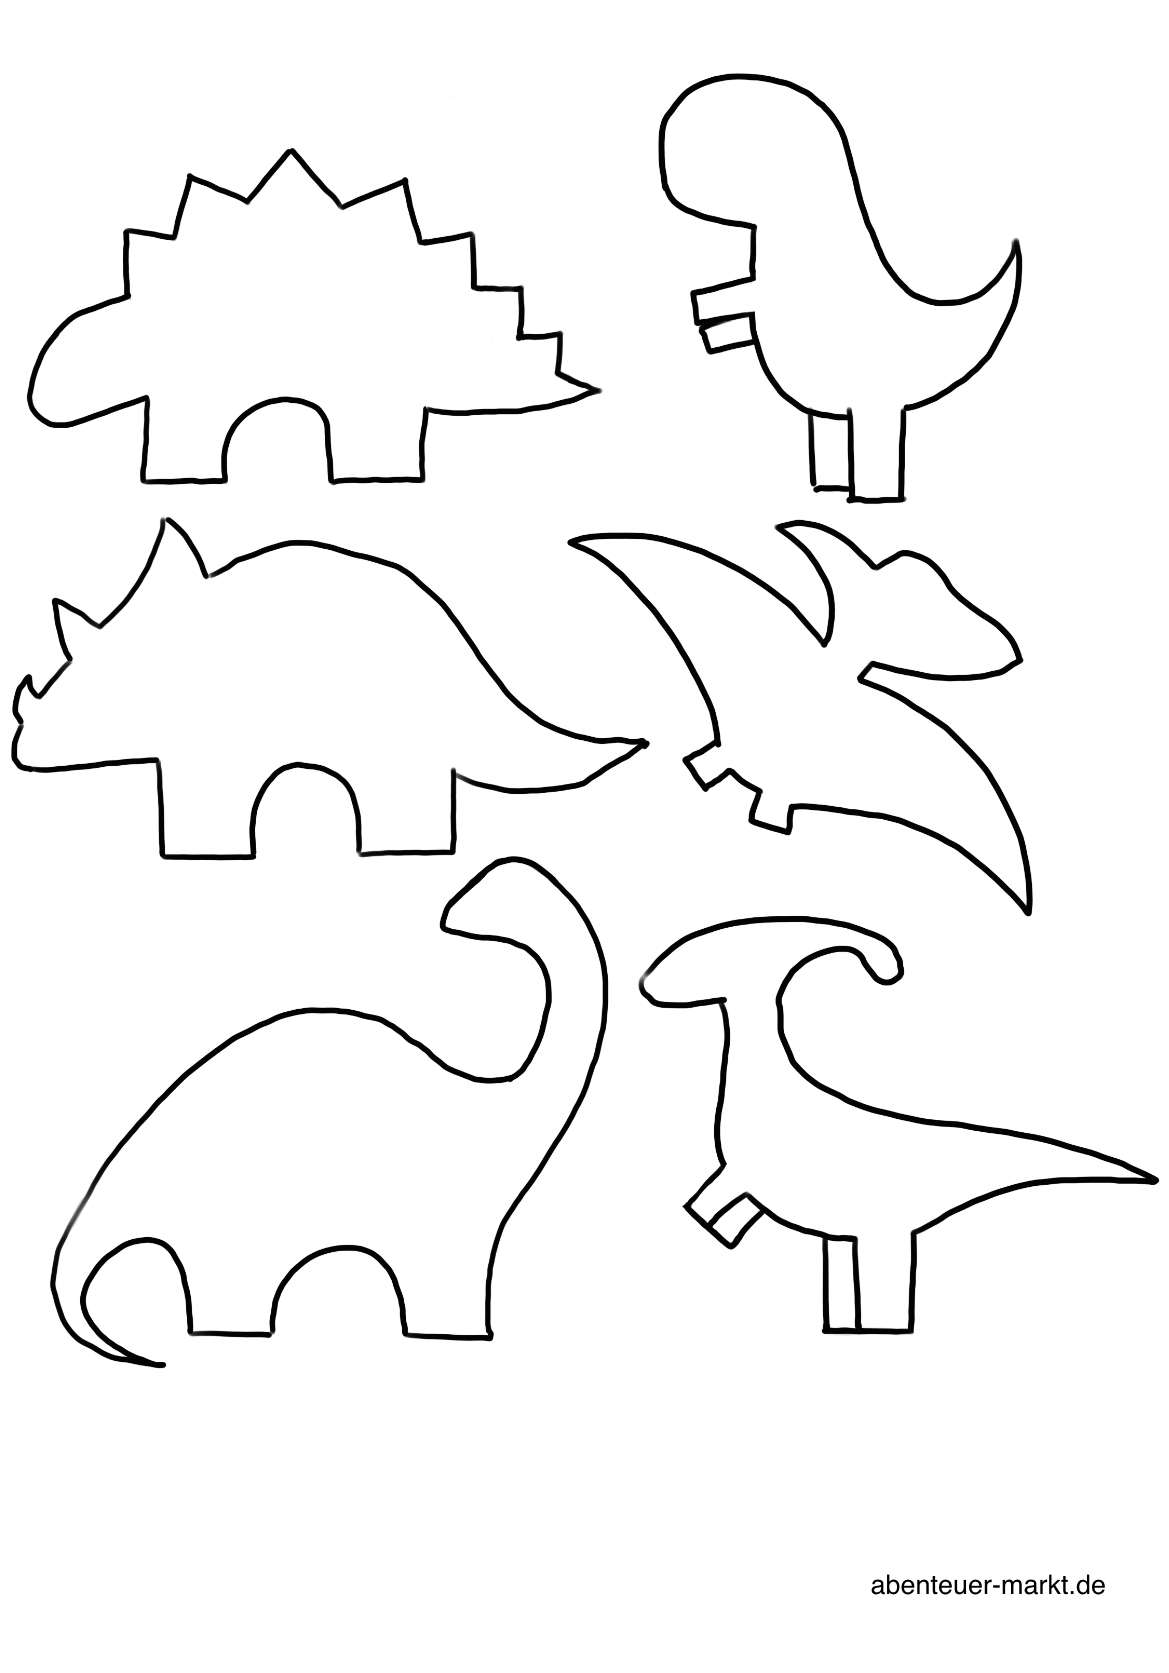 2. Bild zum Schritt 1 für das Bastel- und DIY-Abenteuer für Kinder: 'Wählt euch zuerst eine Dinosaurier Vorlage aus und druckt die...'